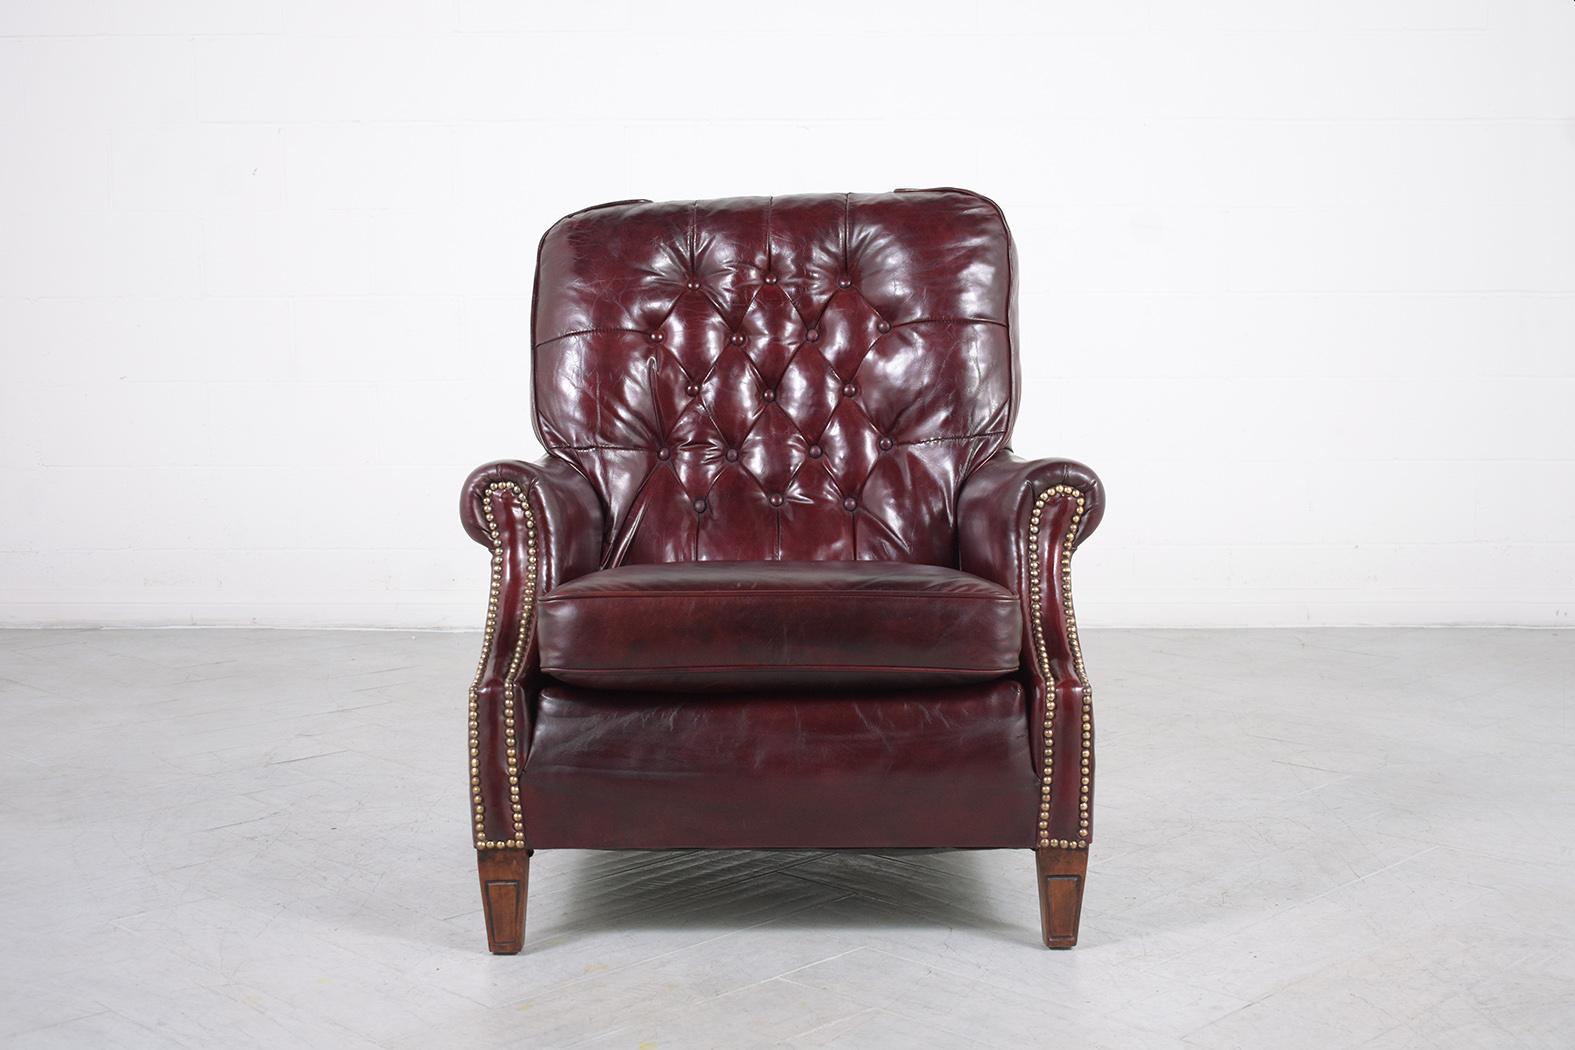 Tacheté Fauteuil de salon anglais ancien Chesterfield : Design touffeté en cuir rouge Cordovan en vente